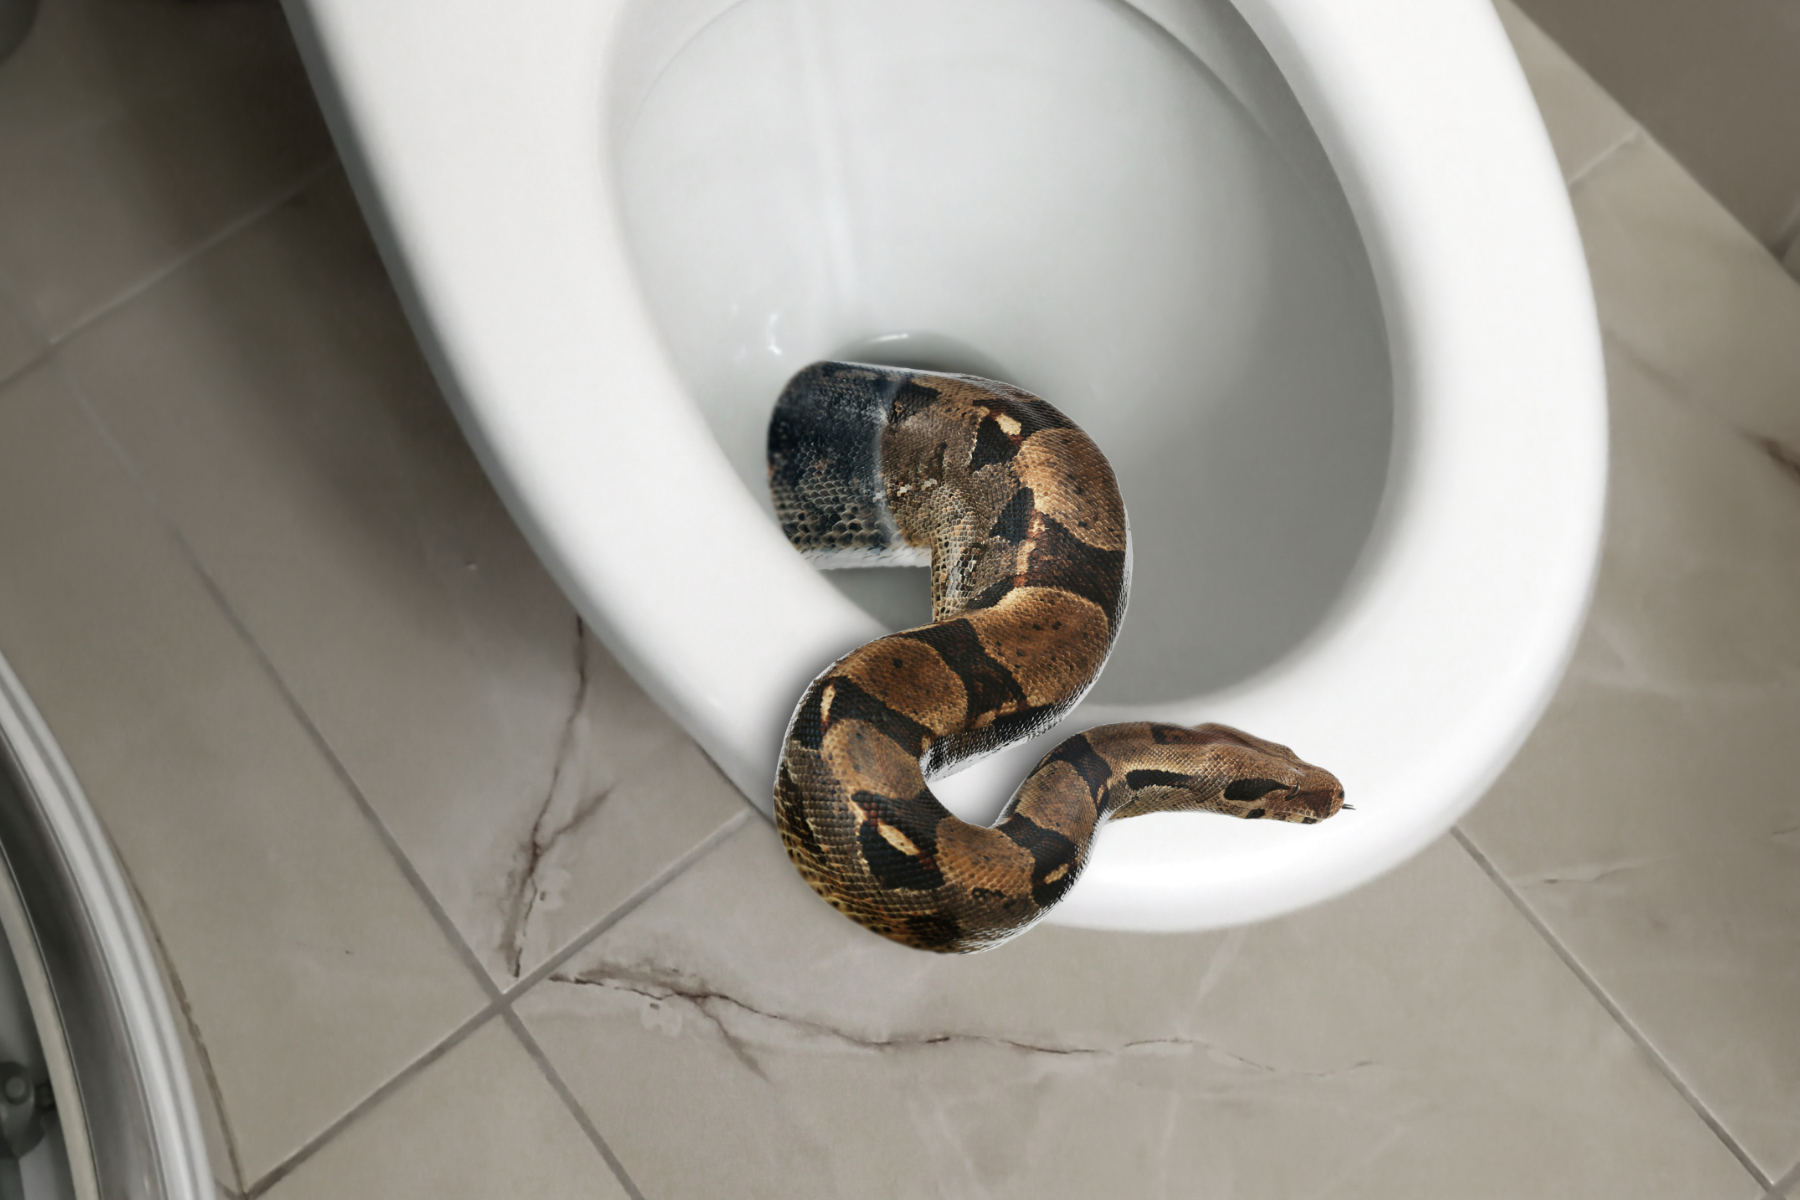 https://d.newsweek.com/en/full/2211788/snake-toilet.jpg